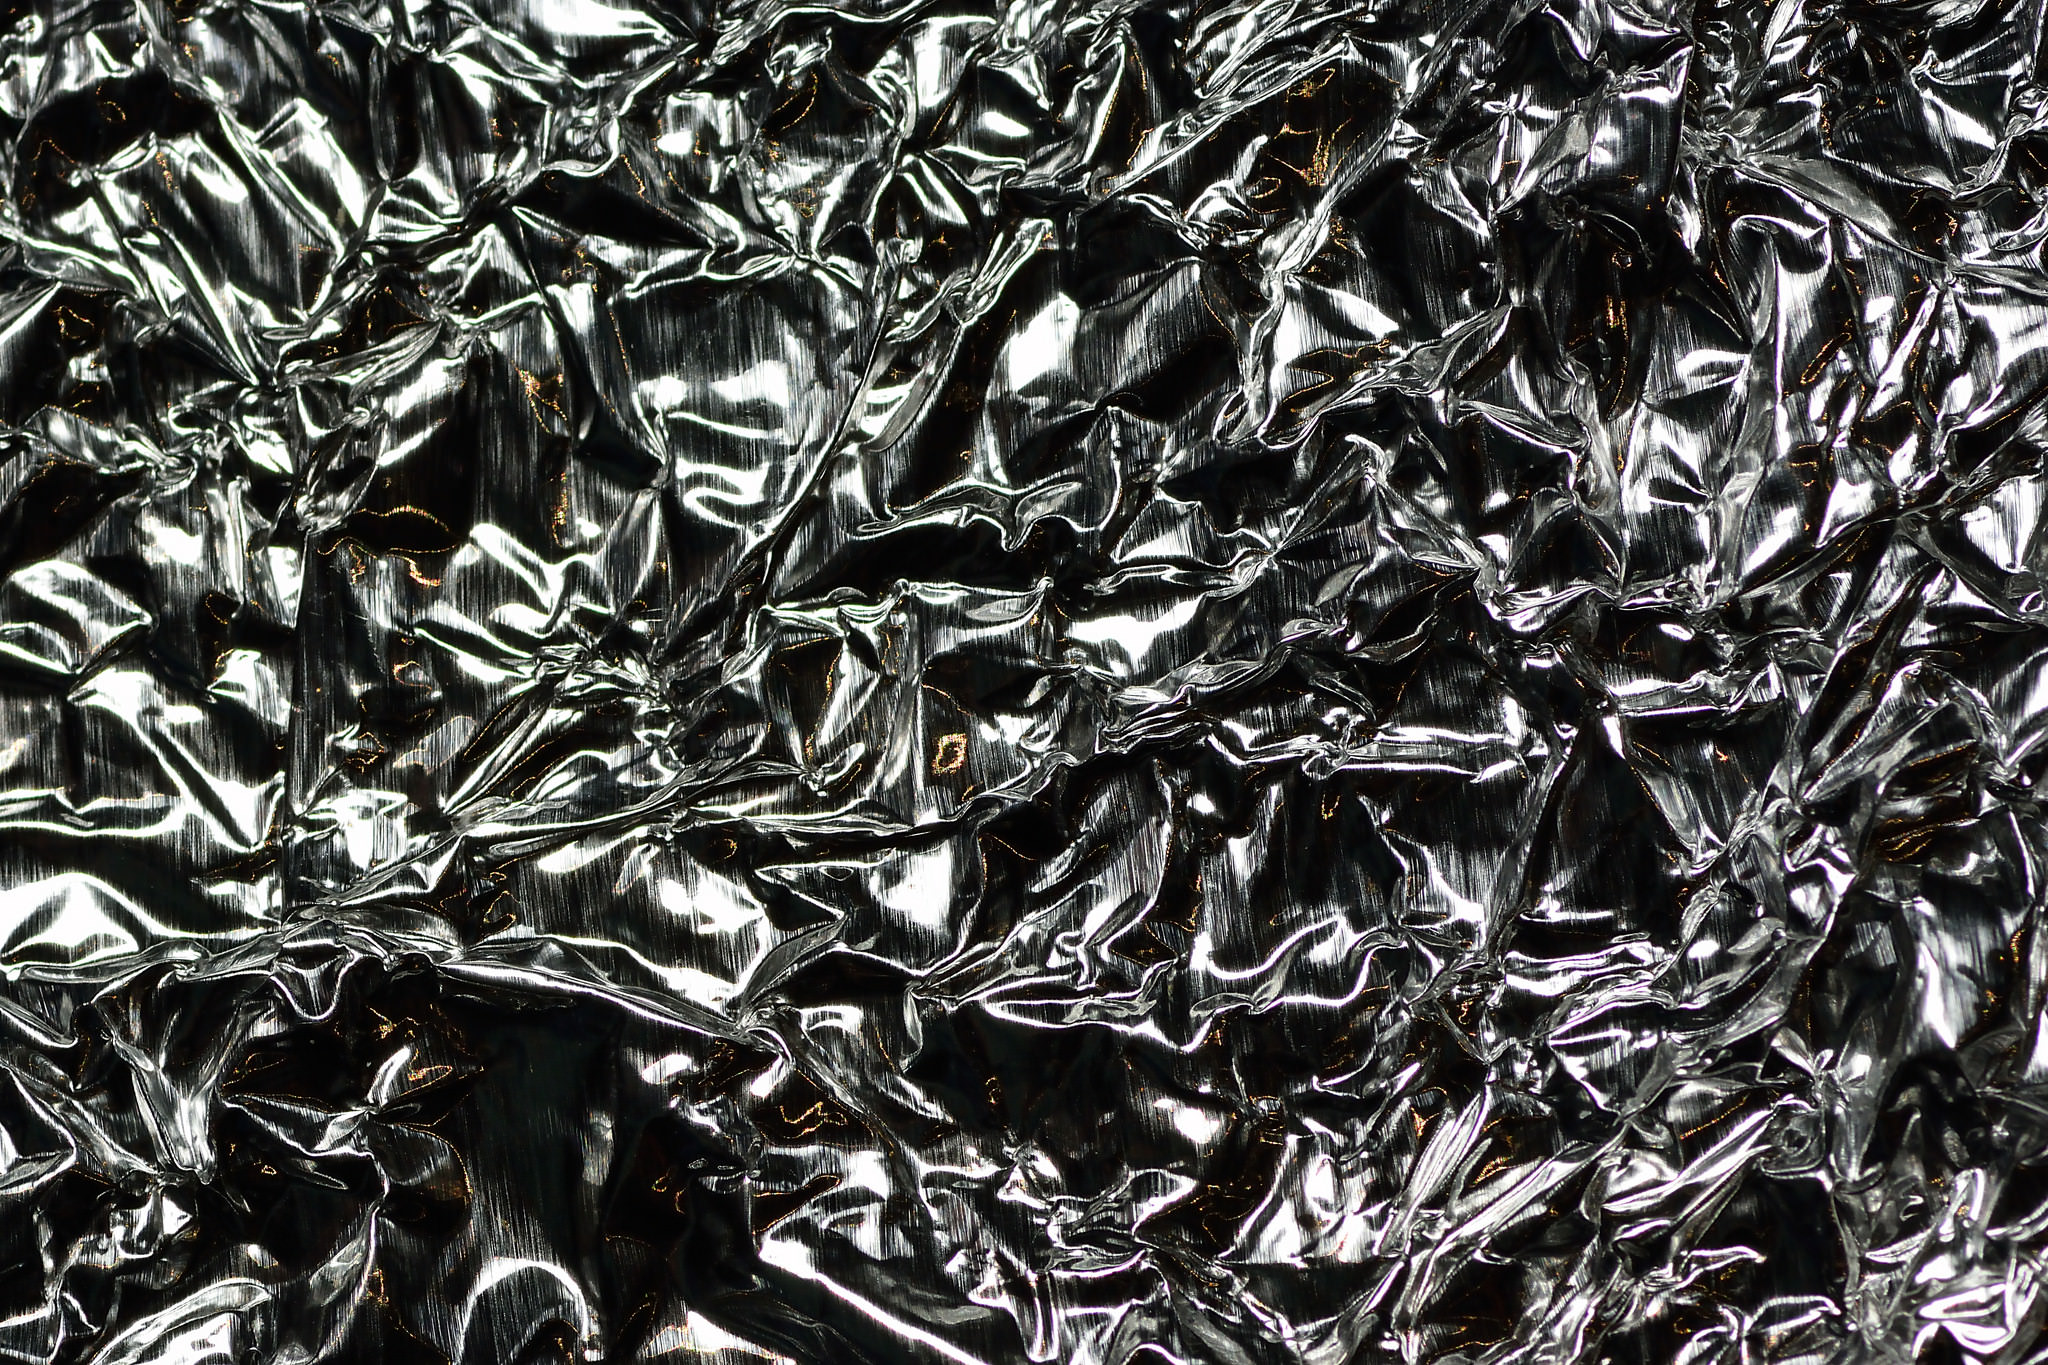 Folded and Creased aluminium Foil Texture